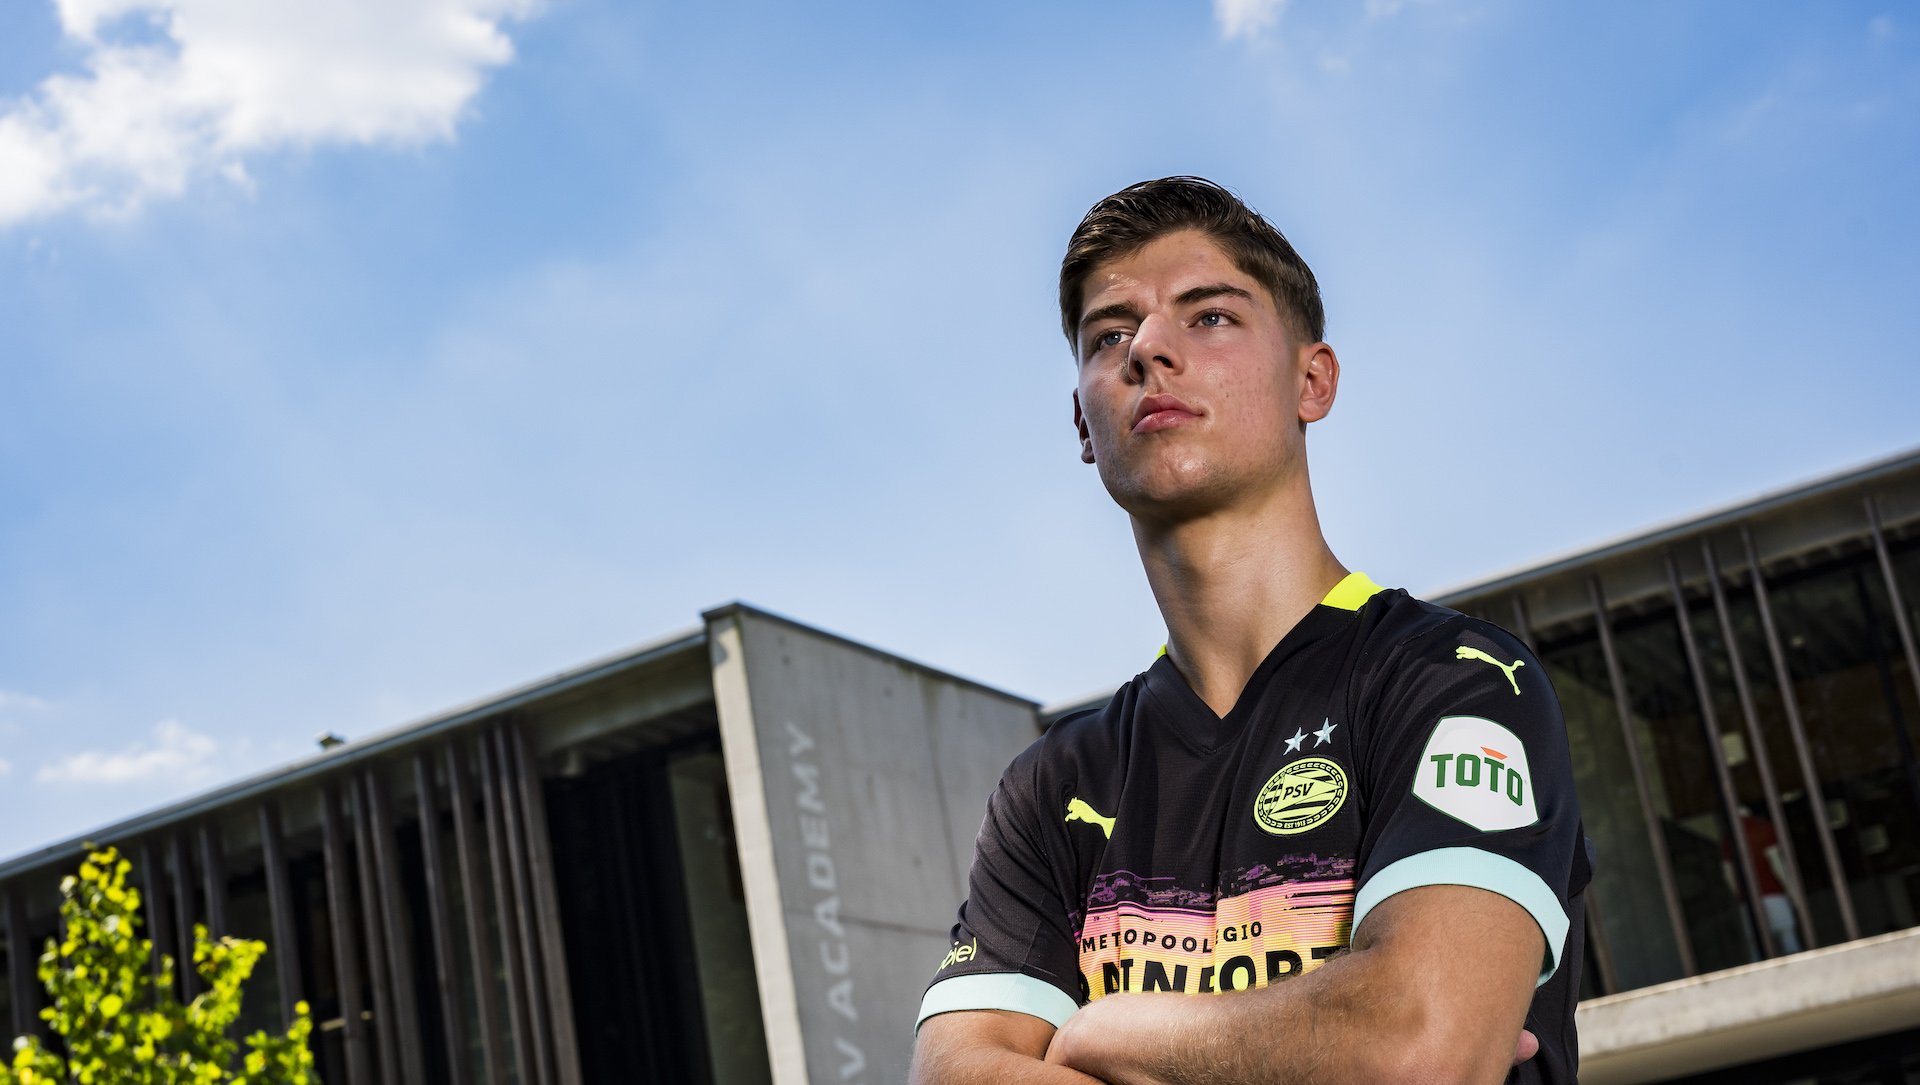 PSV - Contractnieuws | Tim van den Heuvel verlengt met twee jaar